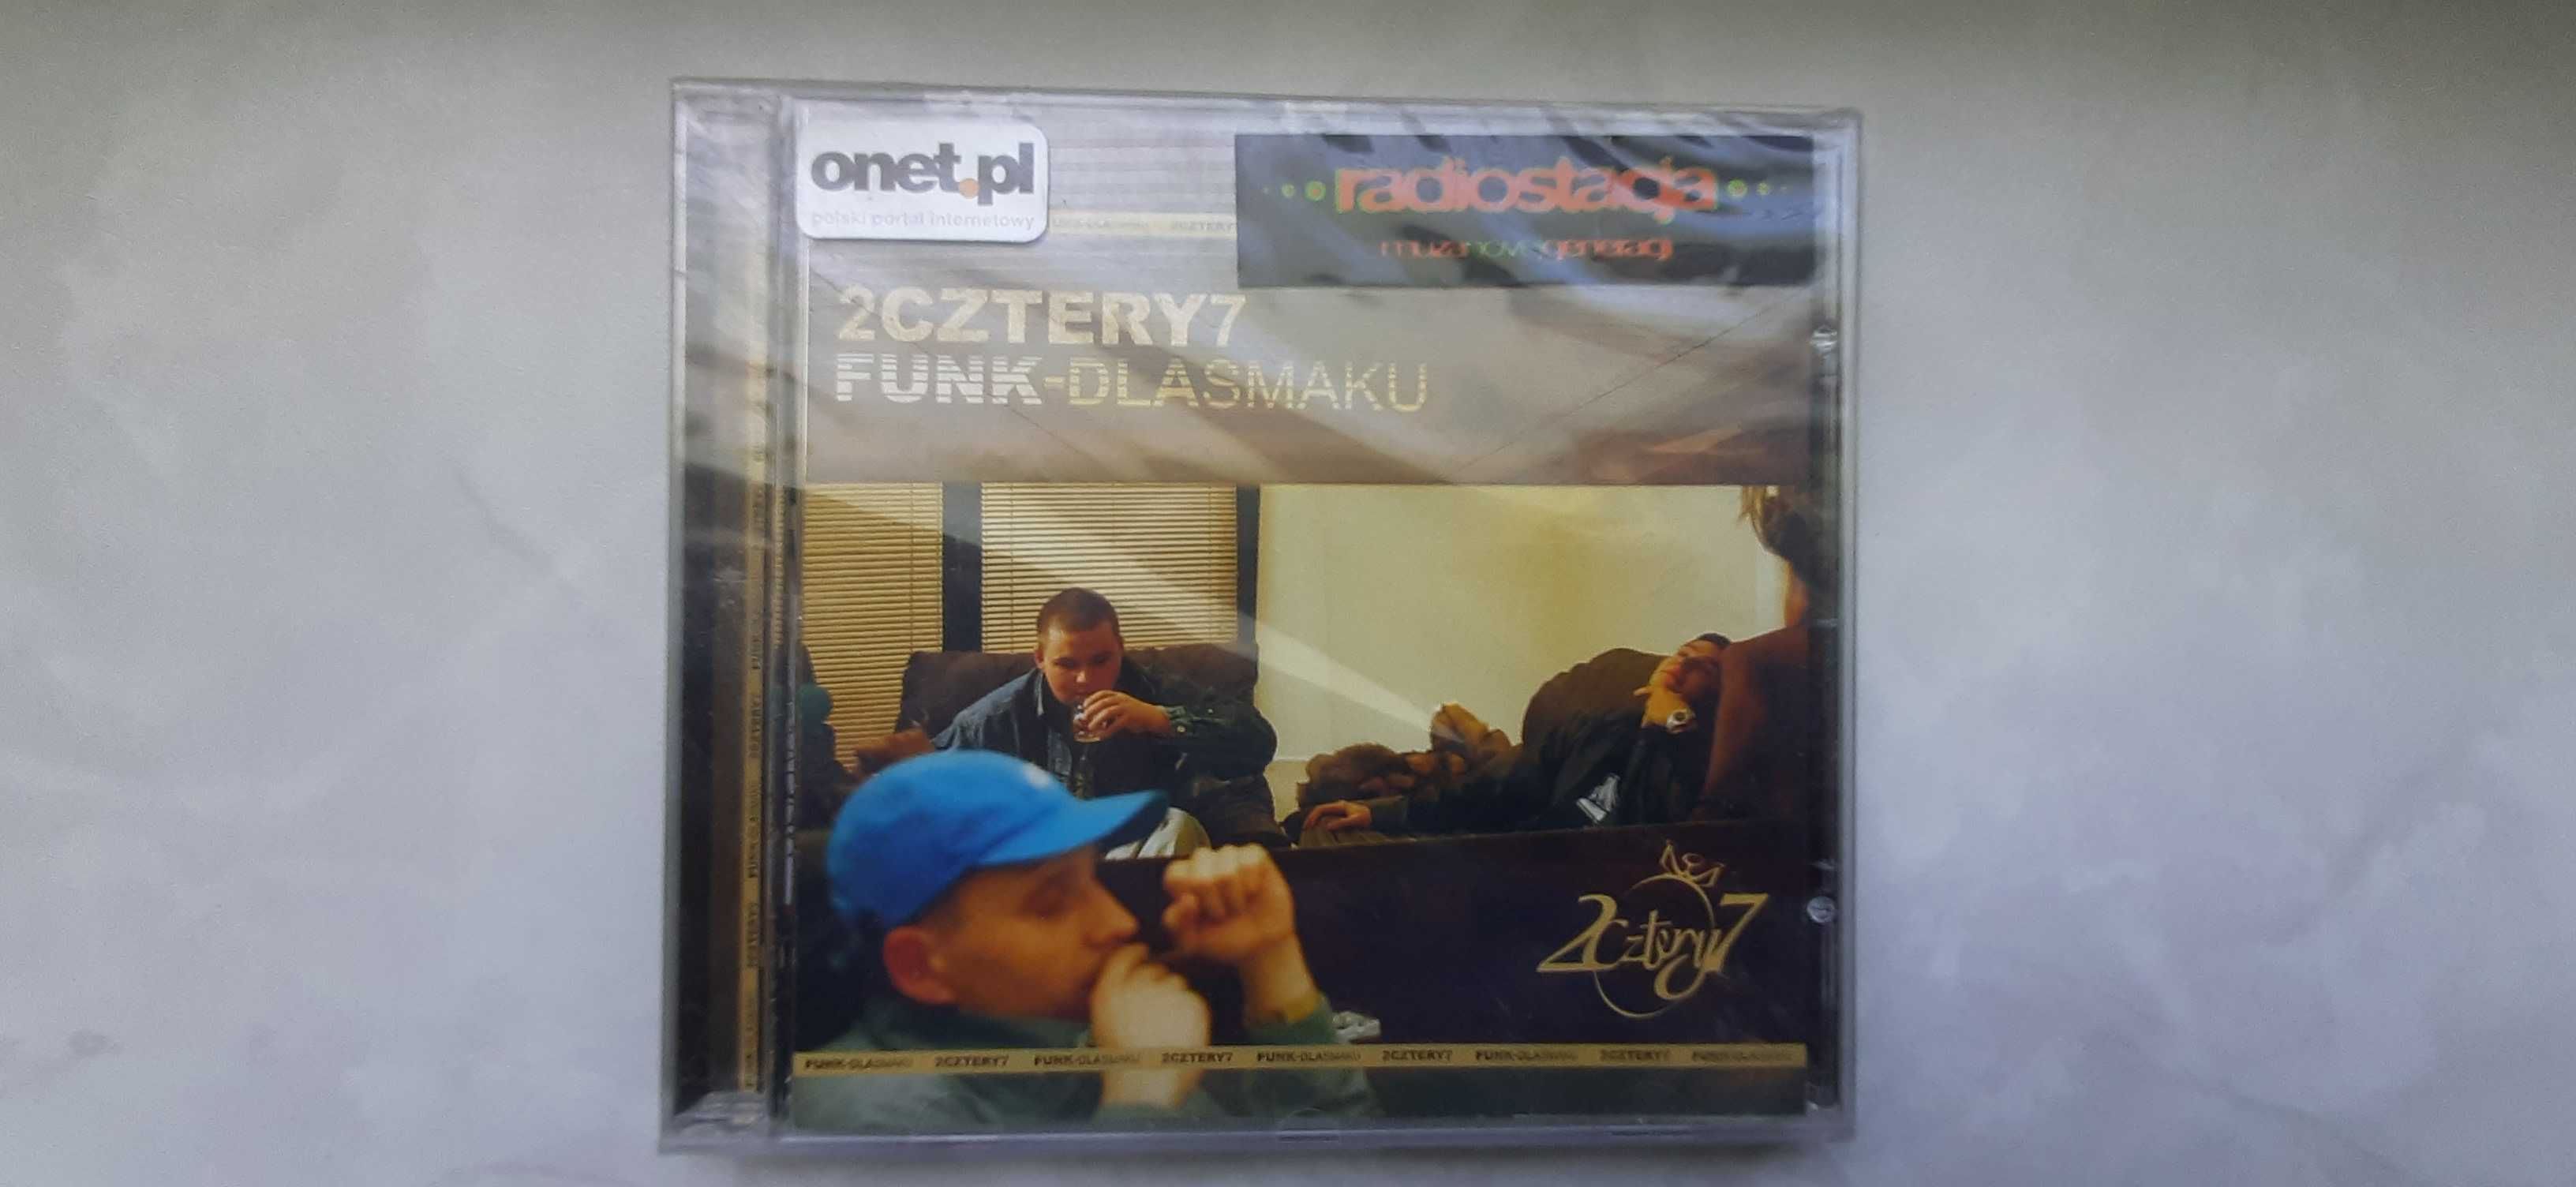 2Cztery7 - Funk Dla Smaku *CD folia